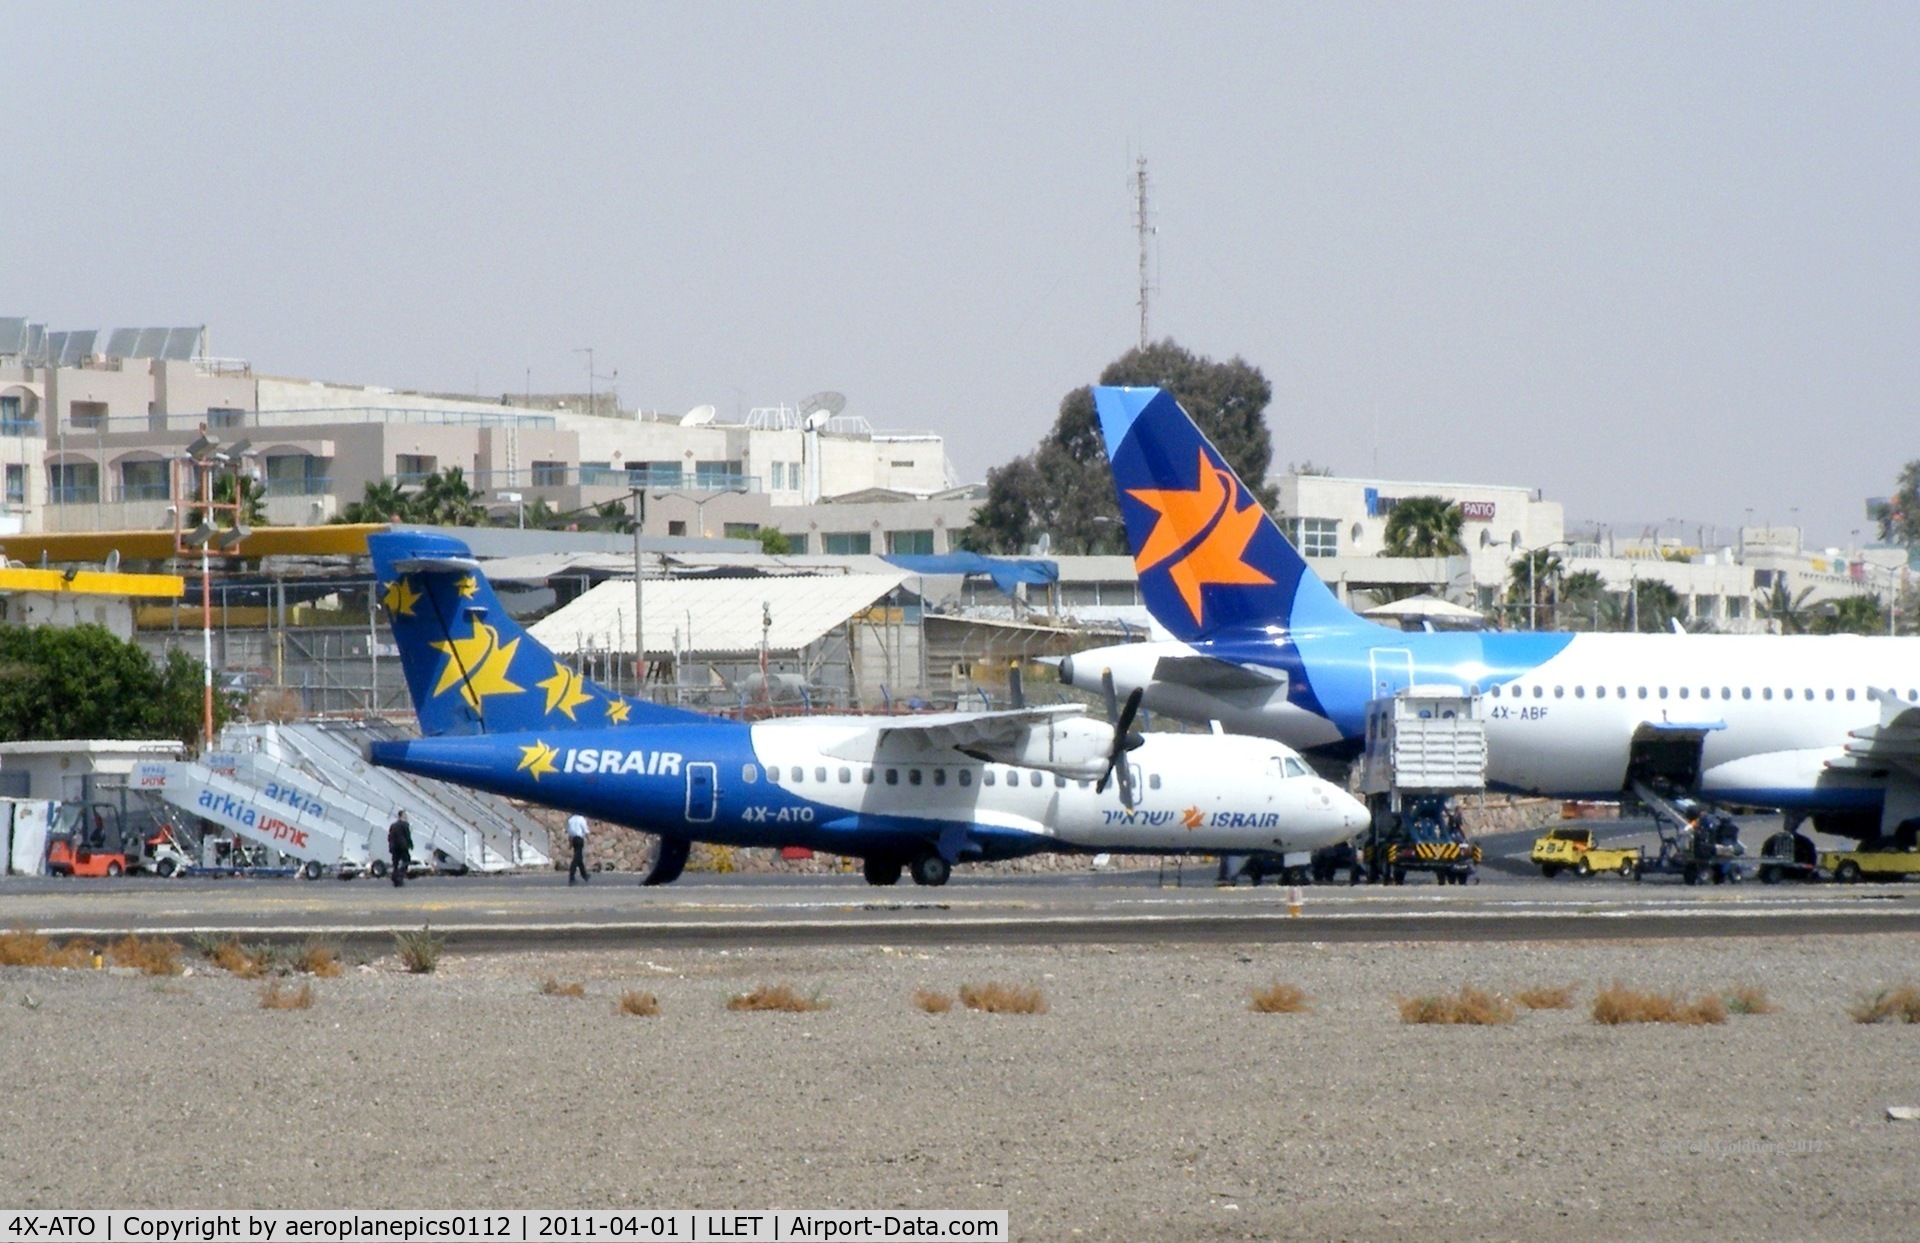 4X-ATO, 1987 ATR 42-320 C/N 064, 4X-ATO at Eilat Airport/J. Hozman Airport.